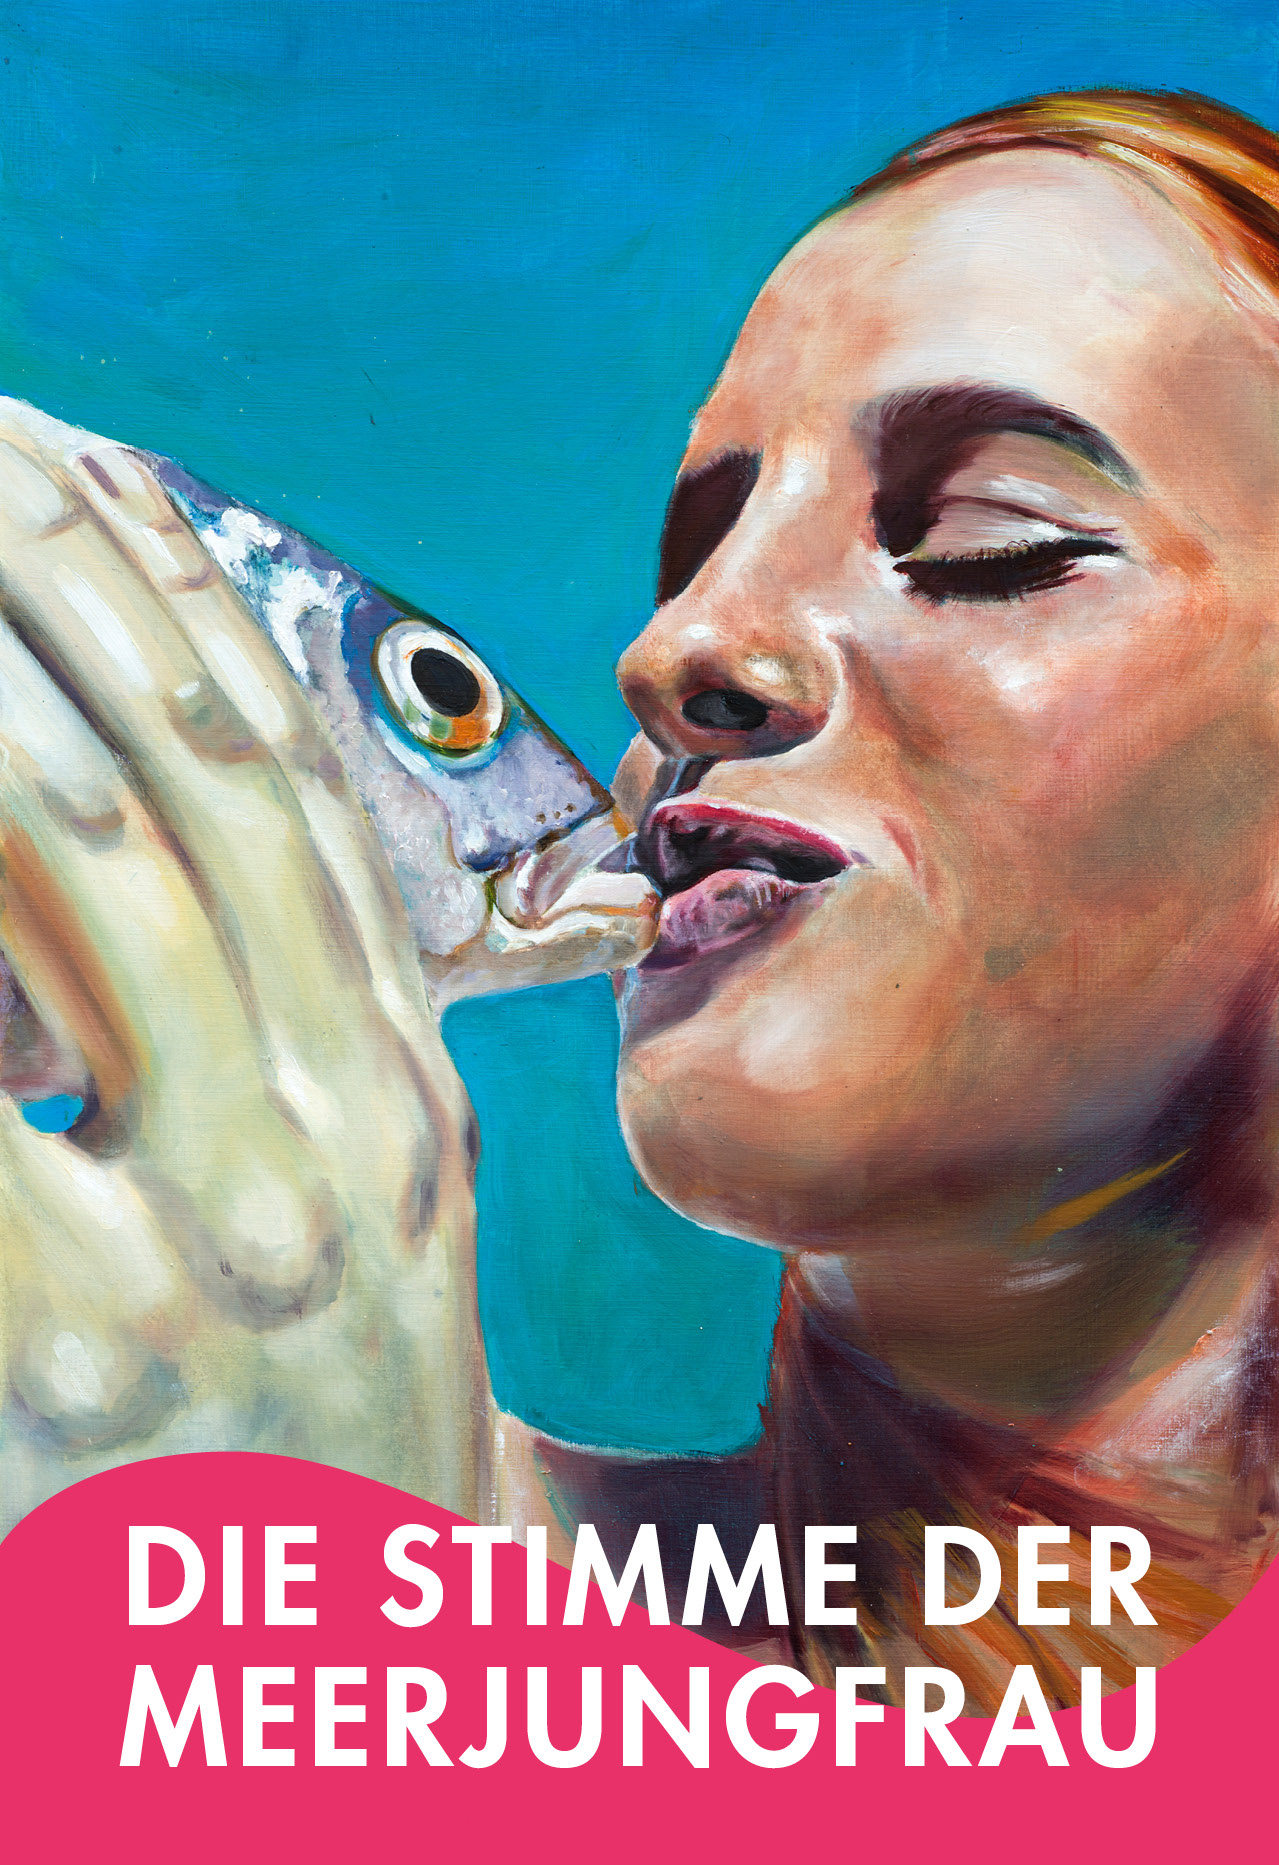 Die Stimme der Meerjungfrau, Bild: Theater Erfurt